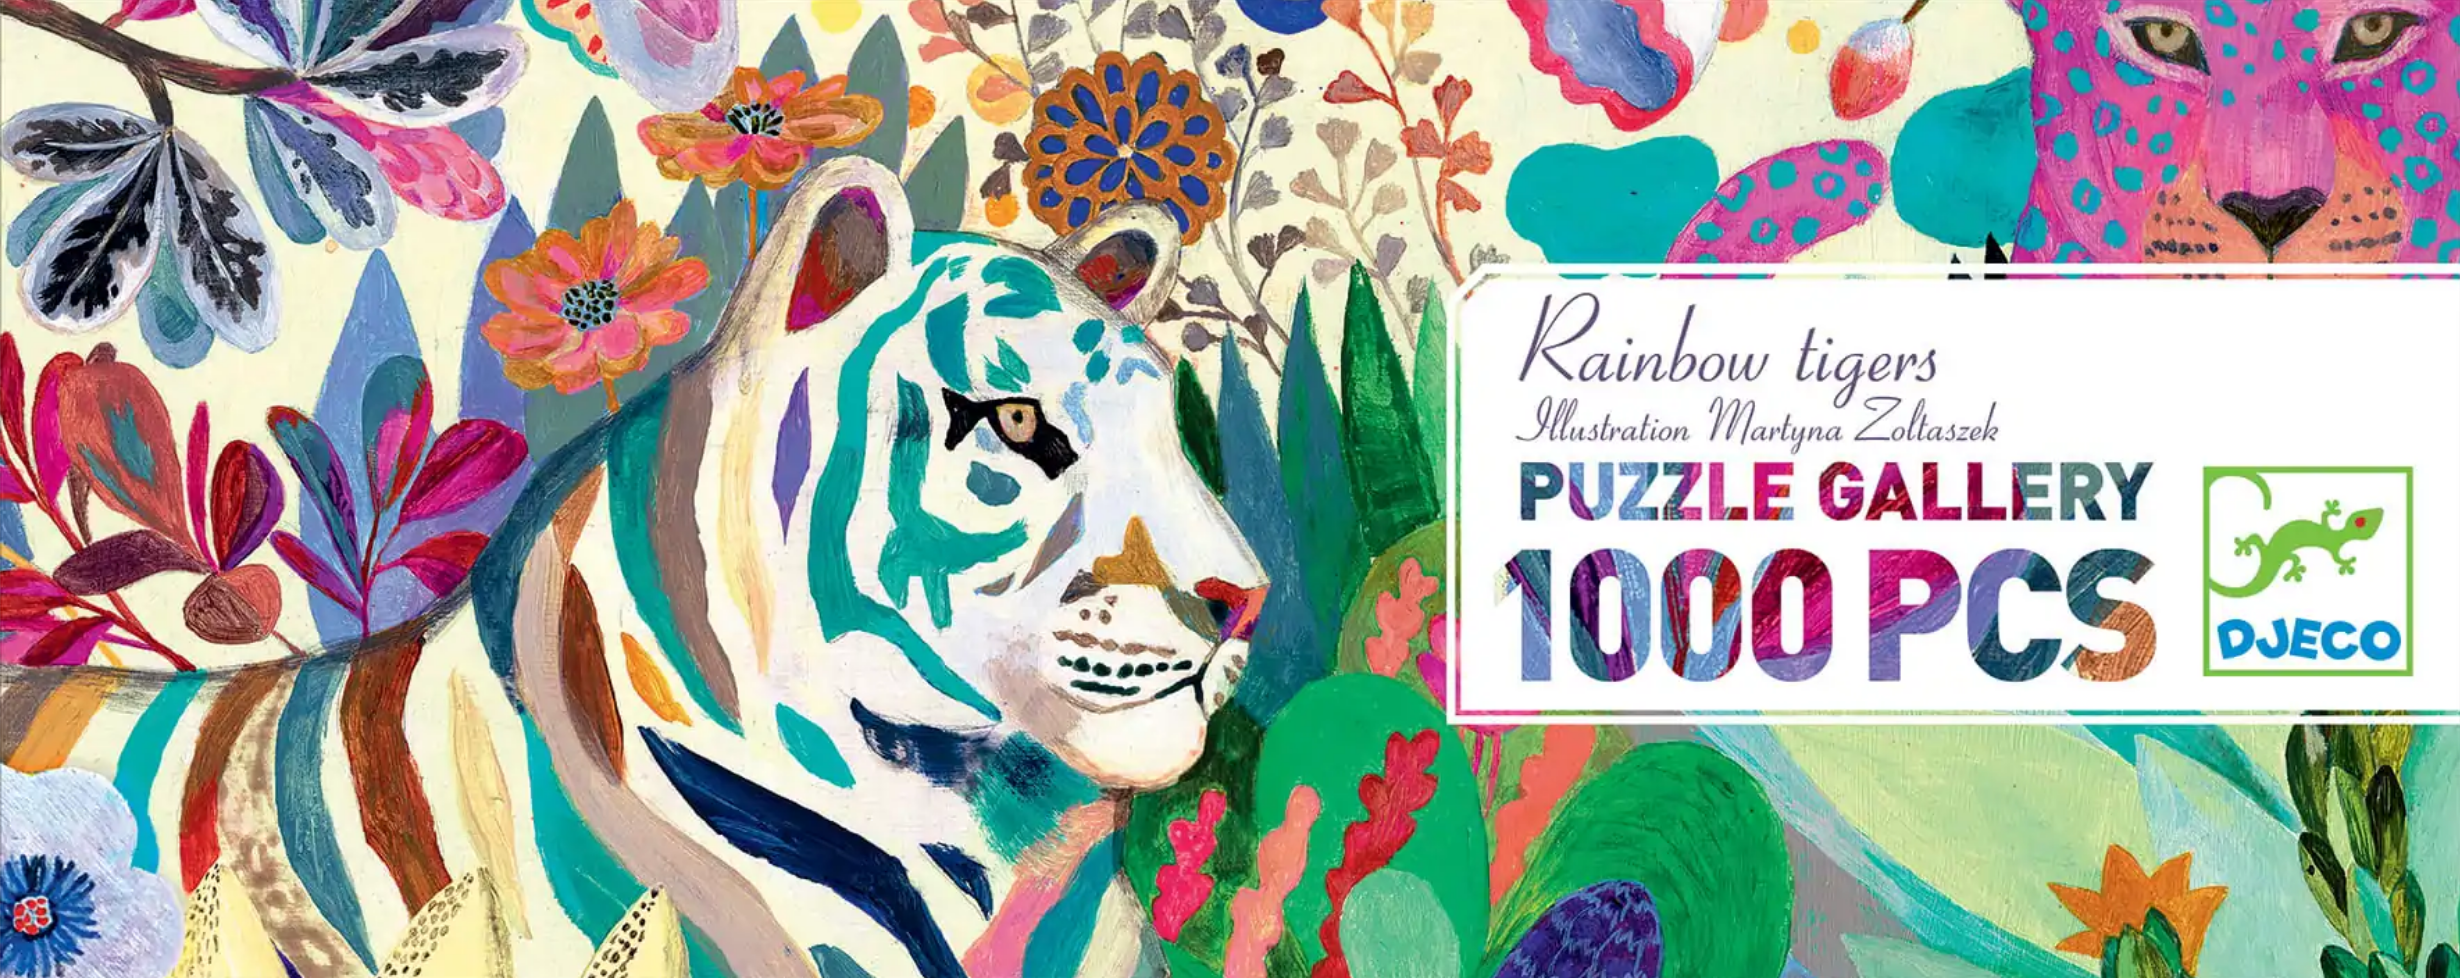 Djeco  Puzzle Gallery Rainbow Tigers 1000 Piece Jigsaw Age 9 - 109